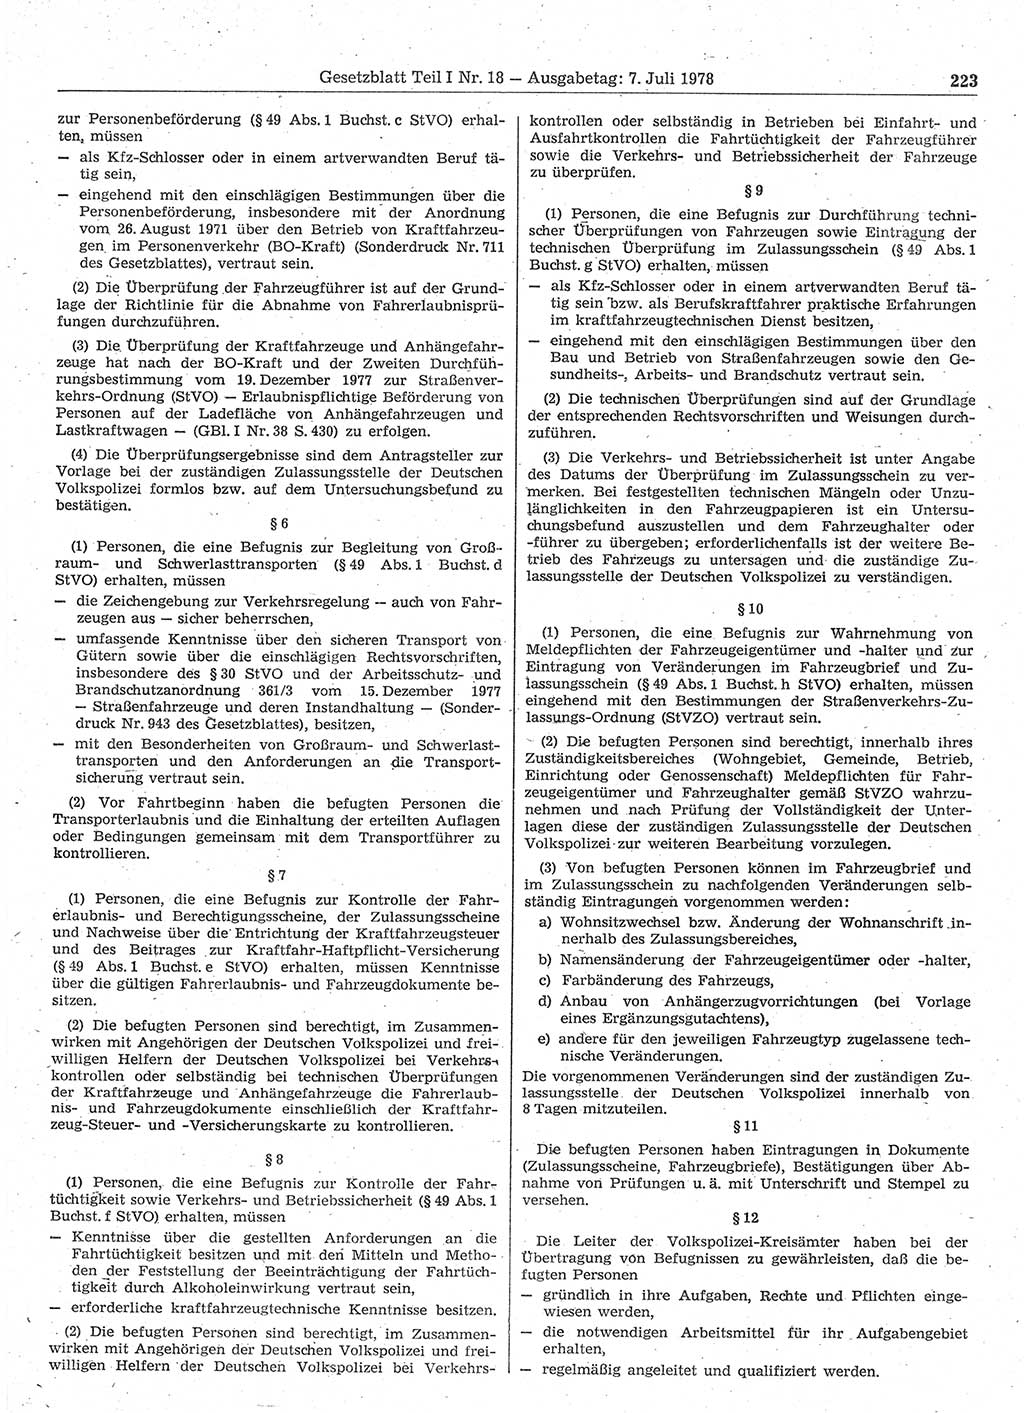 Gesetzblatt (GBl.) der Deutschen Demokratischen Republik (DDR) Teil Ⅰ 1978, Seite 223 (GBl. DDR Ⅰ 1978, S. 223)